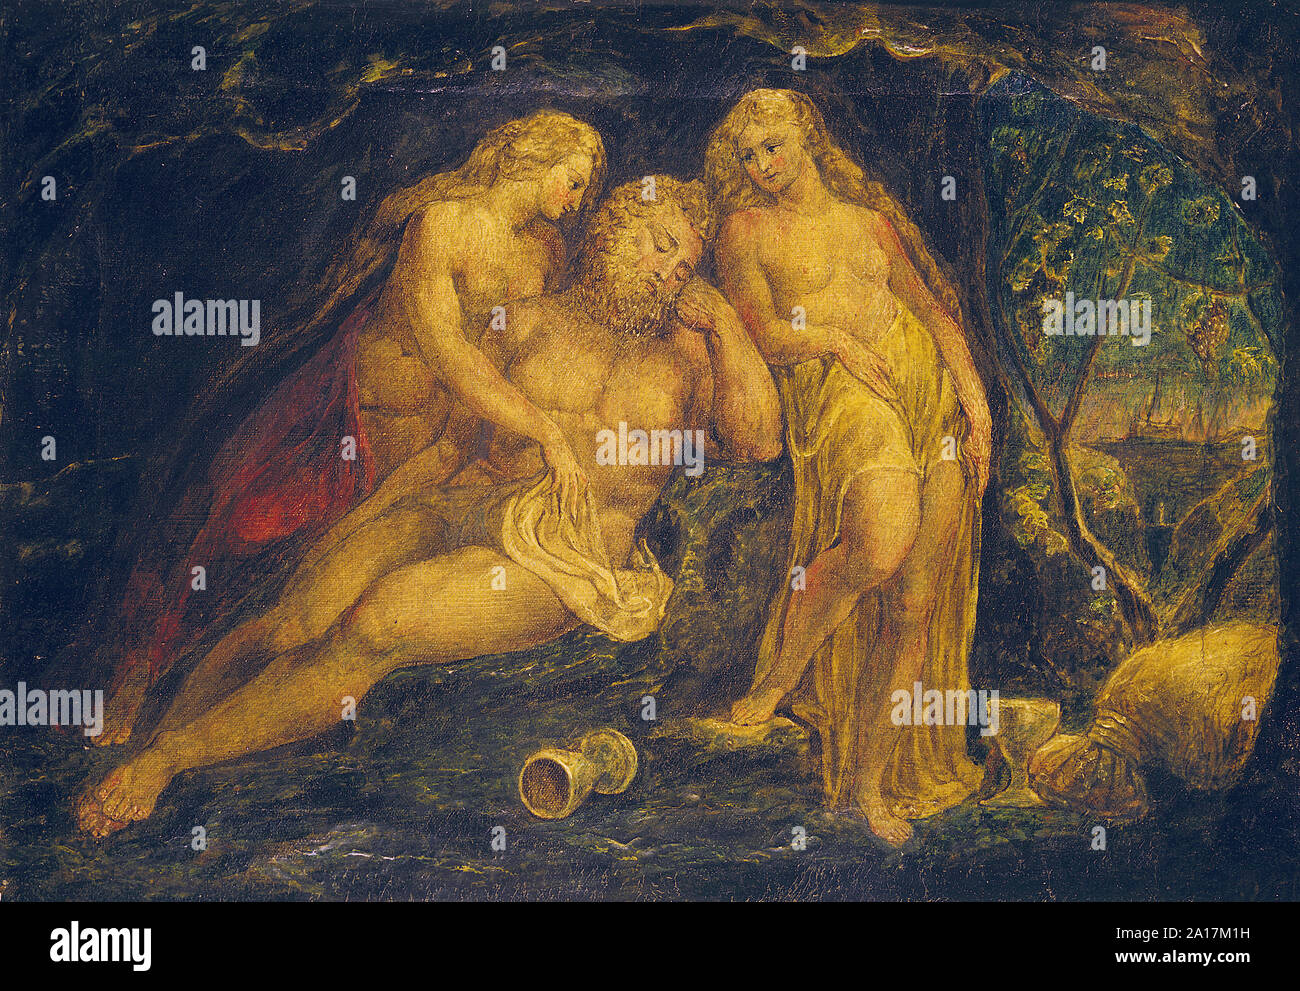 Lot et ses filles, par William Blake, c. 1800 Banque D'Images